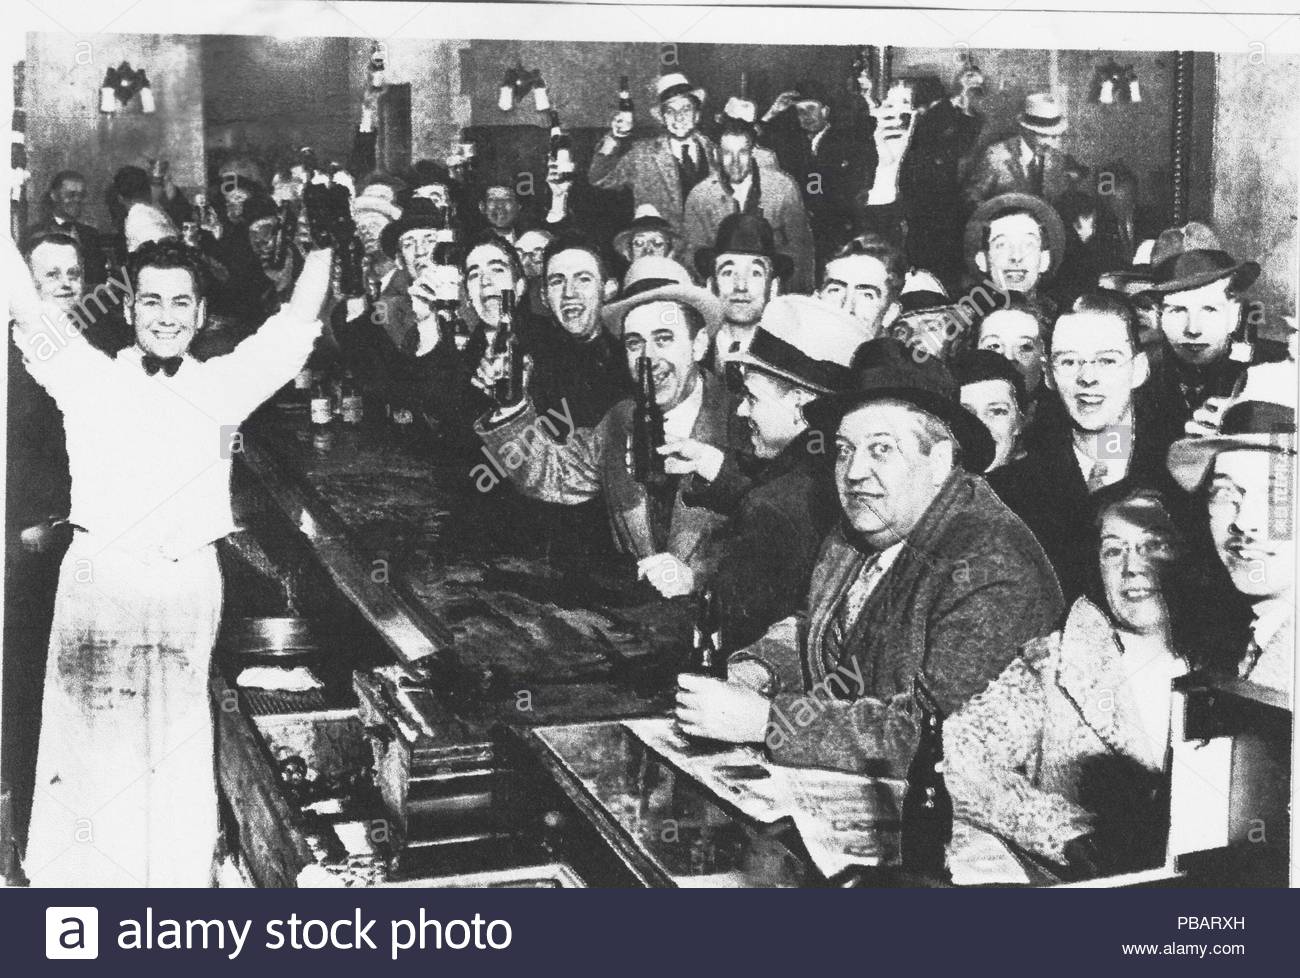 Bildergebnis für 5. dezember 1933 prohibition